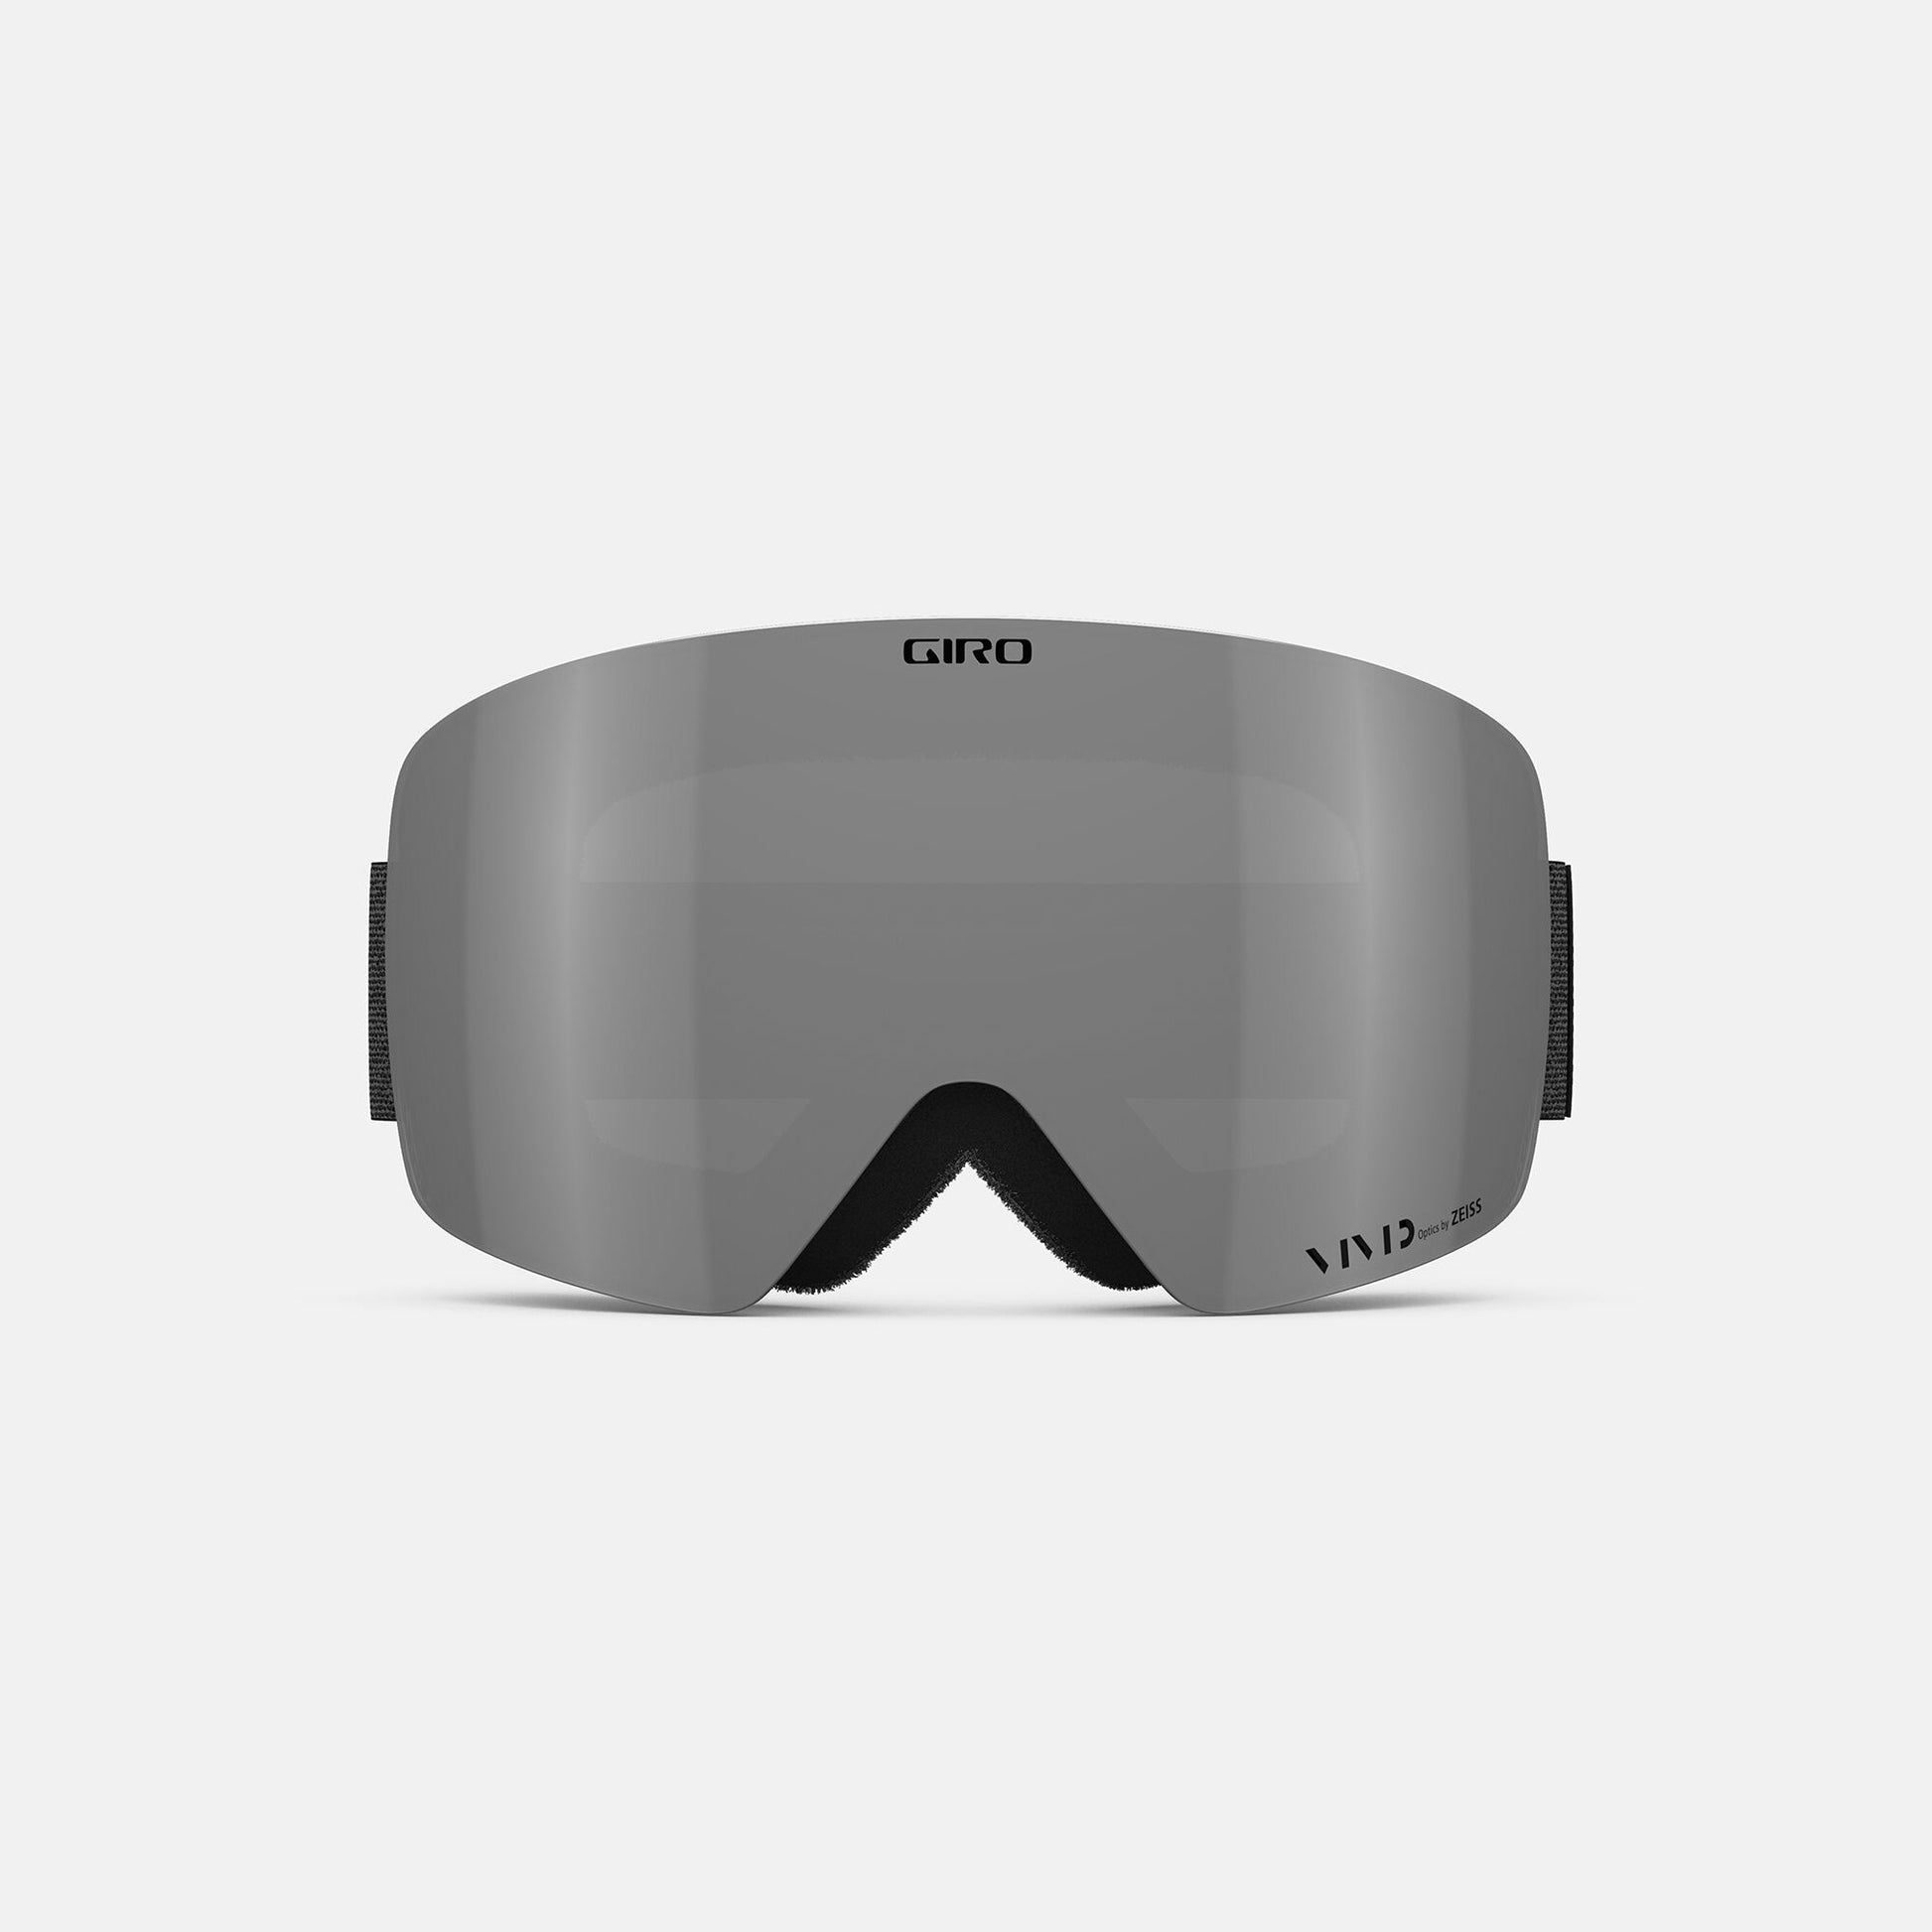 Giro Women's Contour RS Snow Goggles Black Mono/Vivid Onyx Snow Goggles